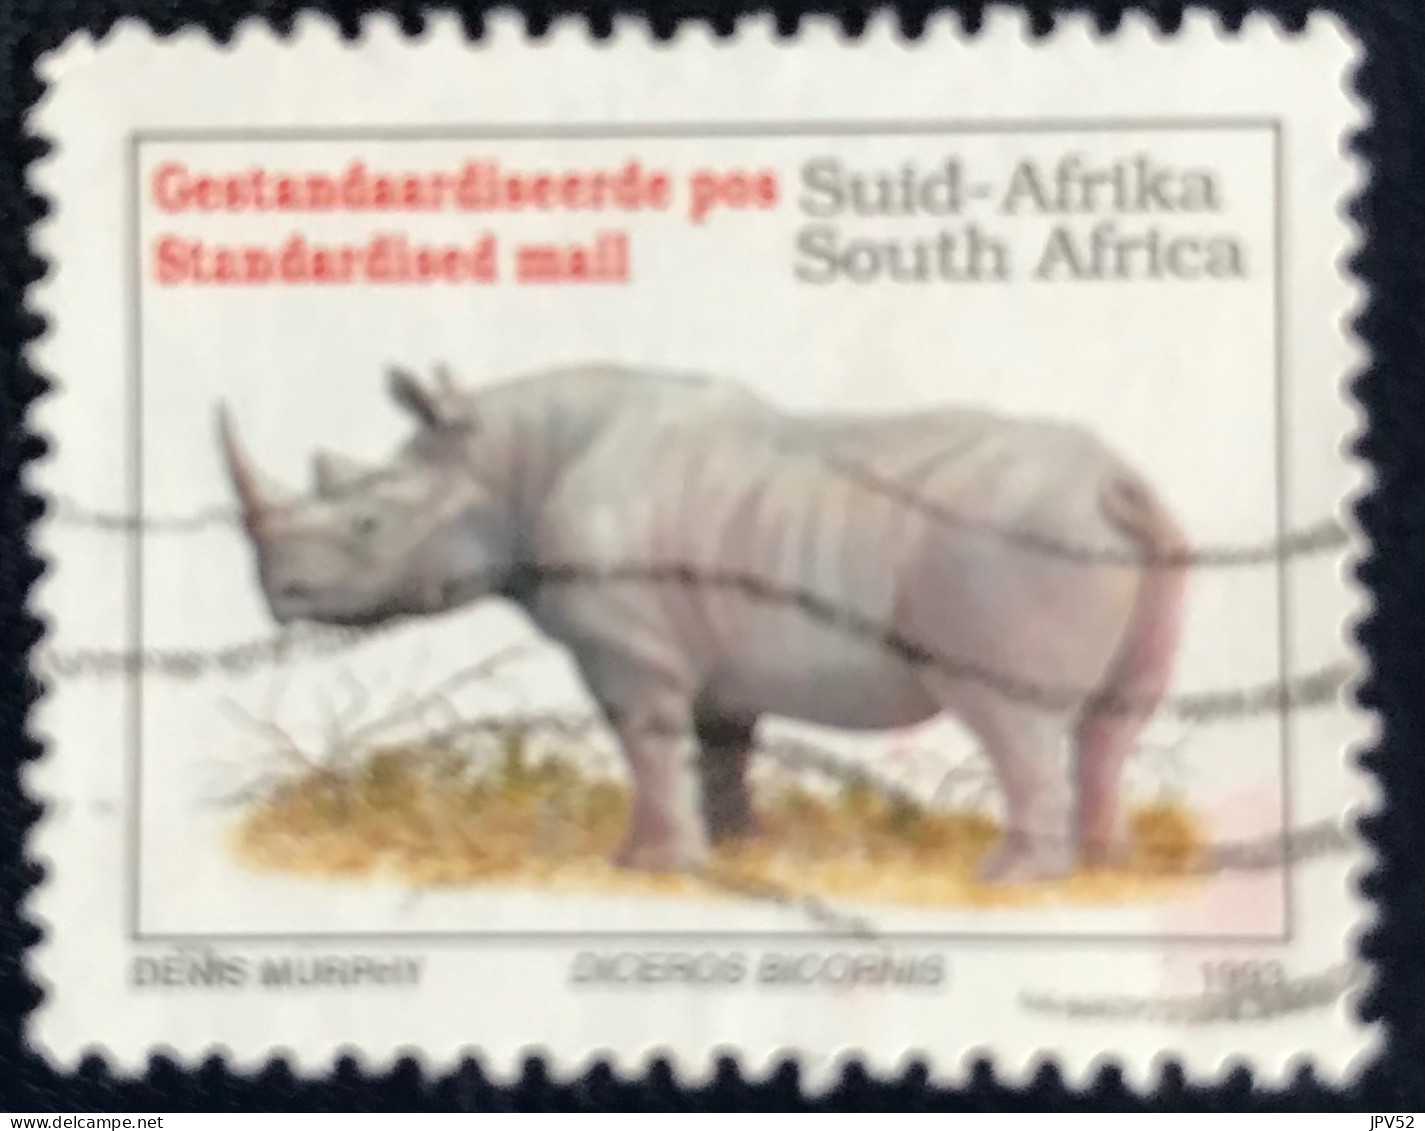 RSA - South Africa - Suid-Afrika  - C18/8 - 1996 - (°)used - Michel 896 - Bedreigde Dieren - Gebraucht